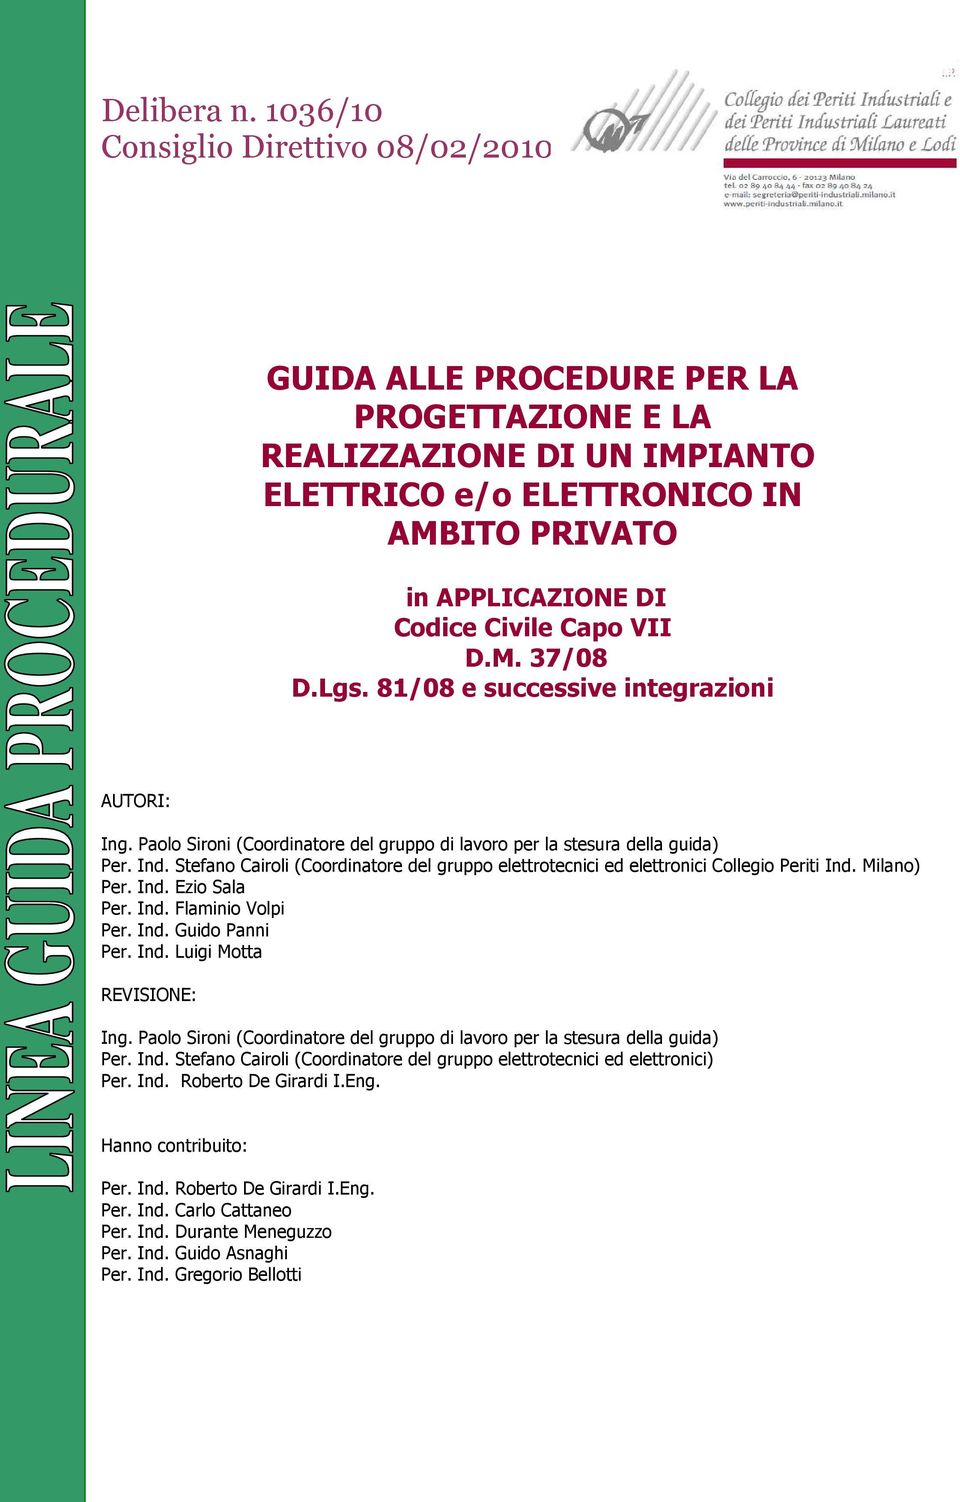 VII D.M. 37/08 D.Lgs. 81/08 e successive integrazioni AUTORI: Ing. Paolo Sironi (Coordinatore del gruppo di lavoro per la stesura della guida) Per. Ind.